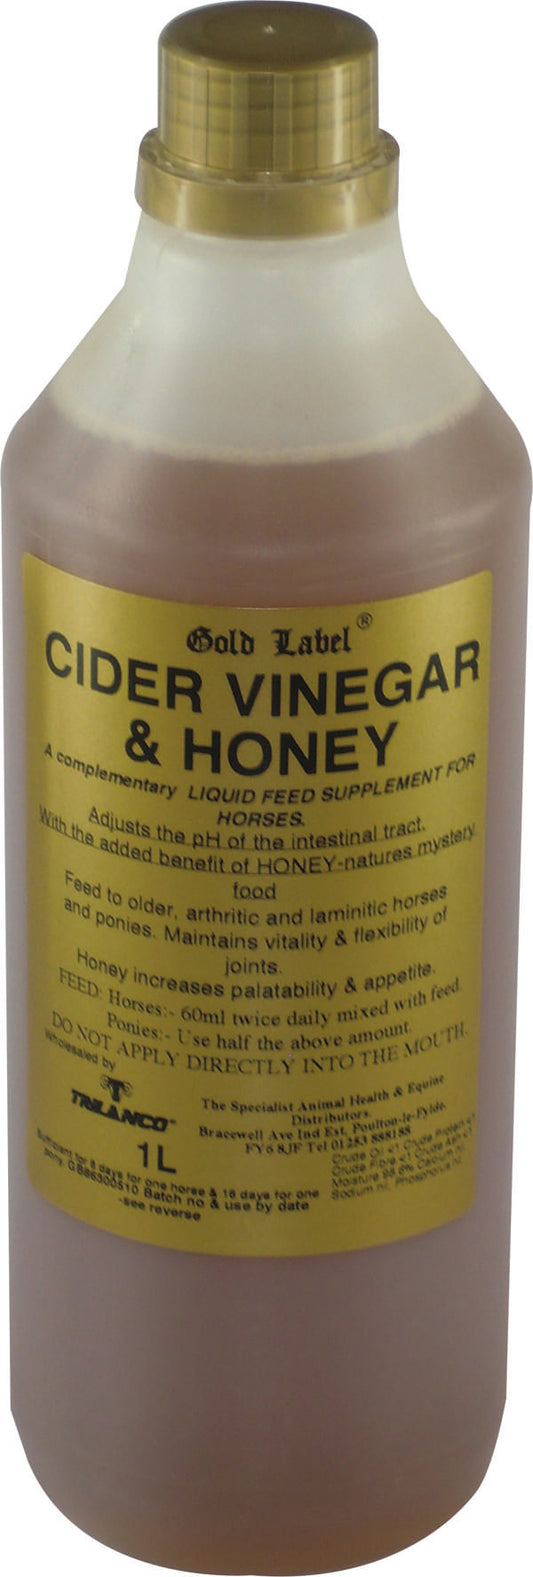 Gold Label Cider Vinegar & Honey 1 Litre